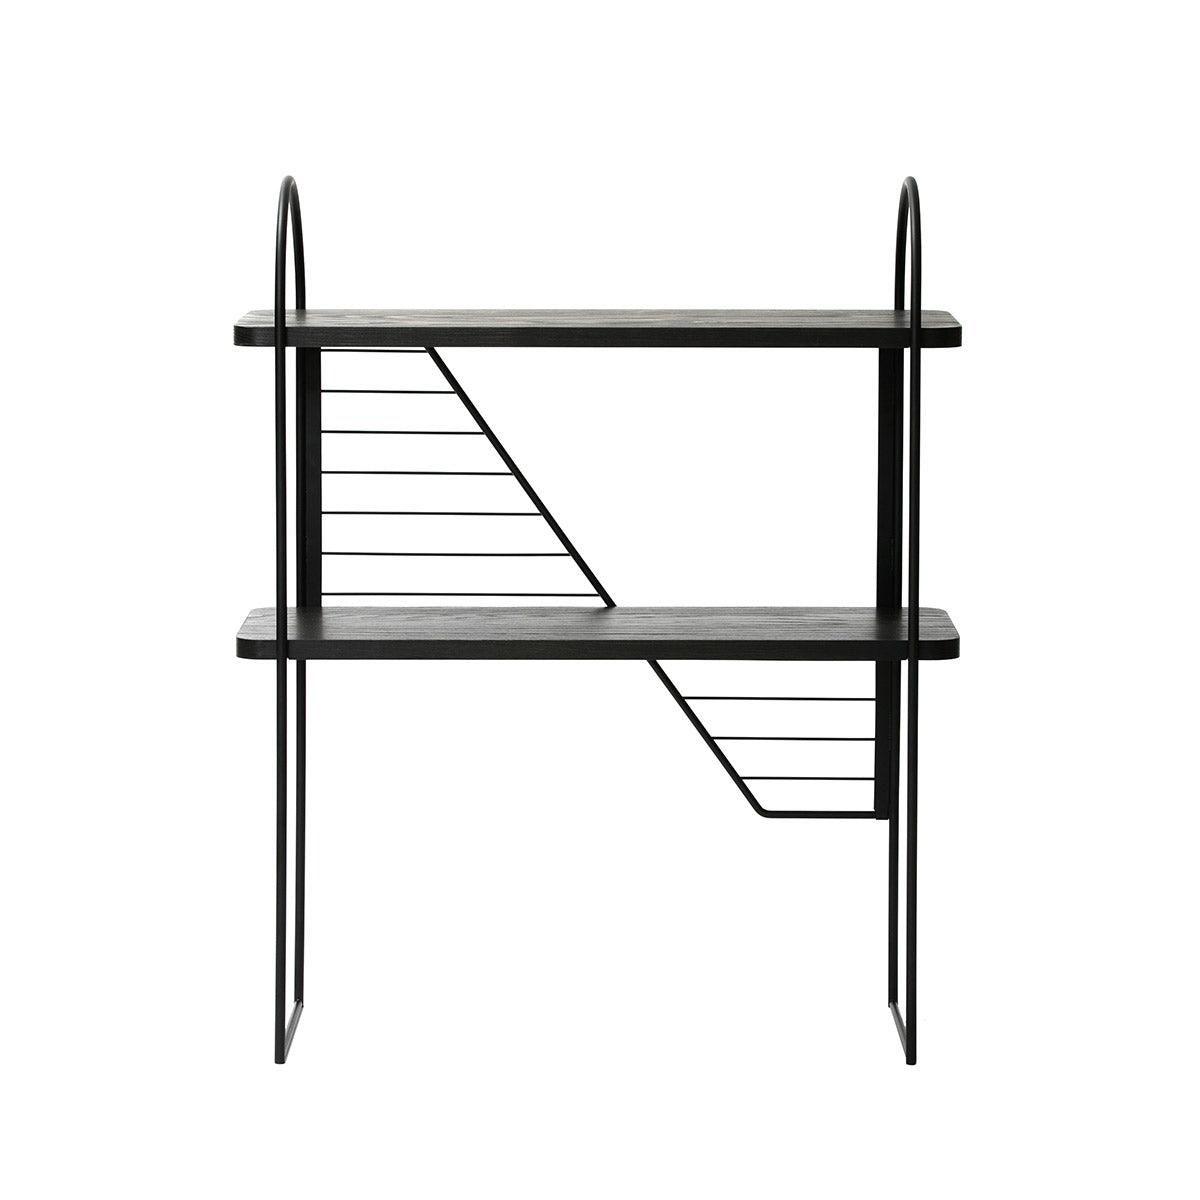 Black Urban Nomad Console Table with black steel frame. 68x27 cm - FÓLK Reykjavik